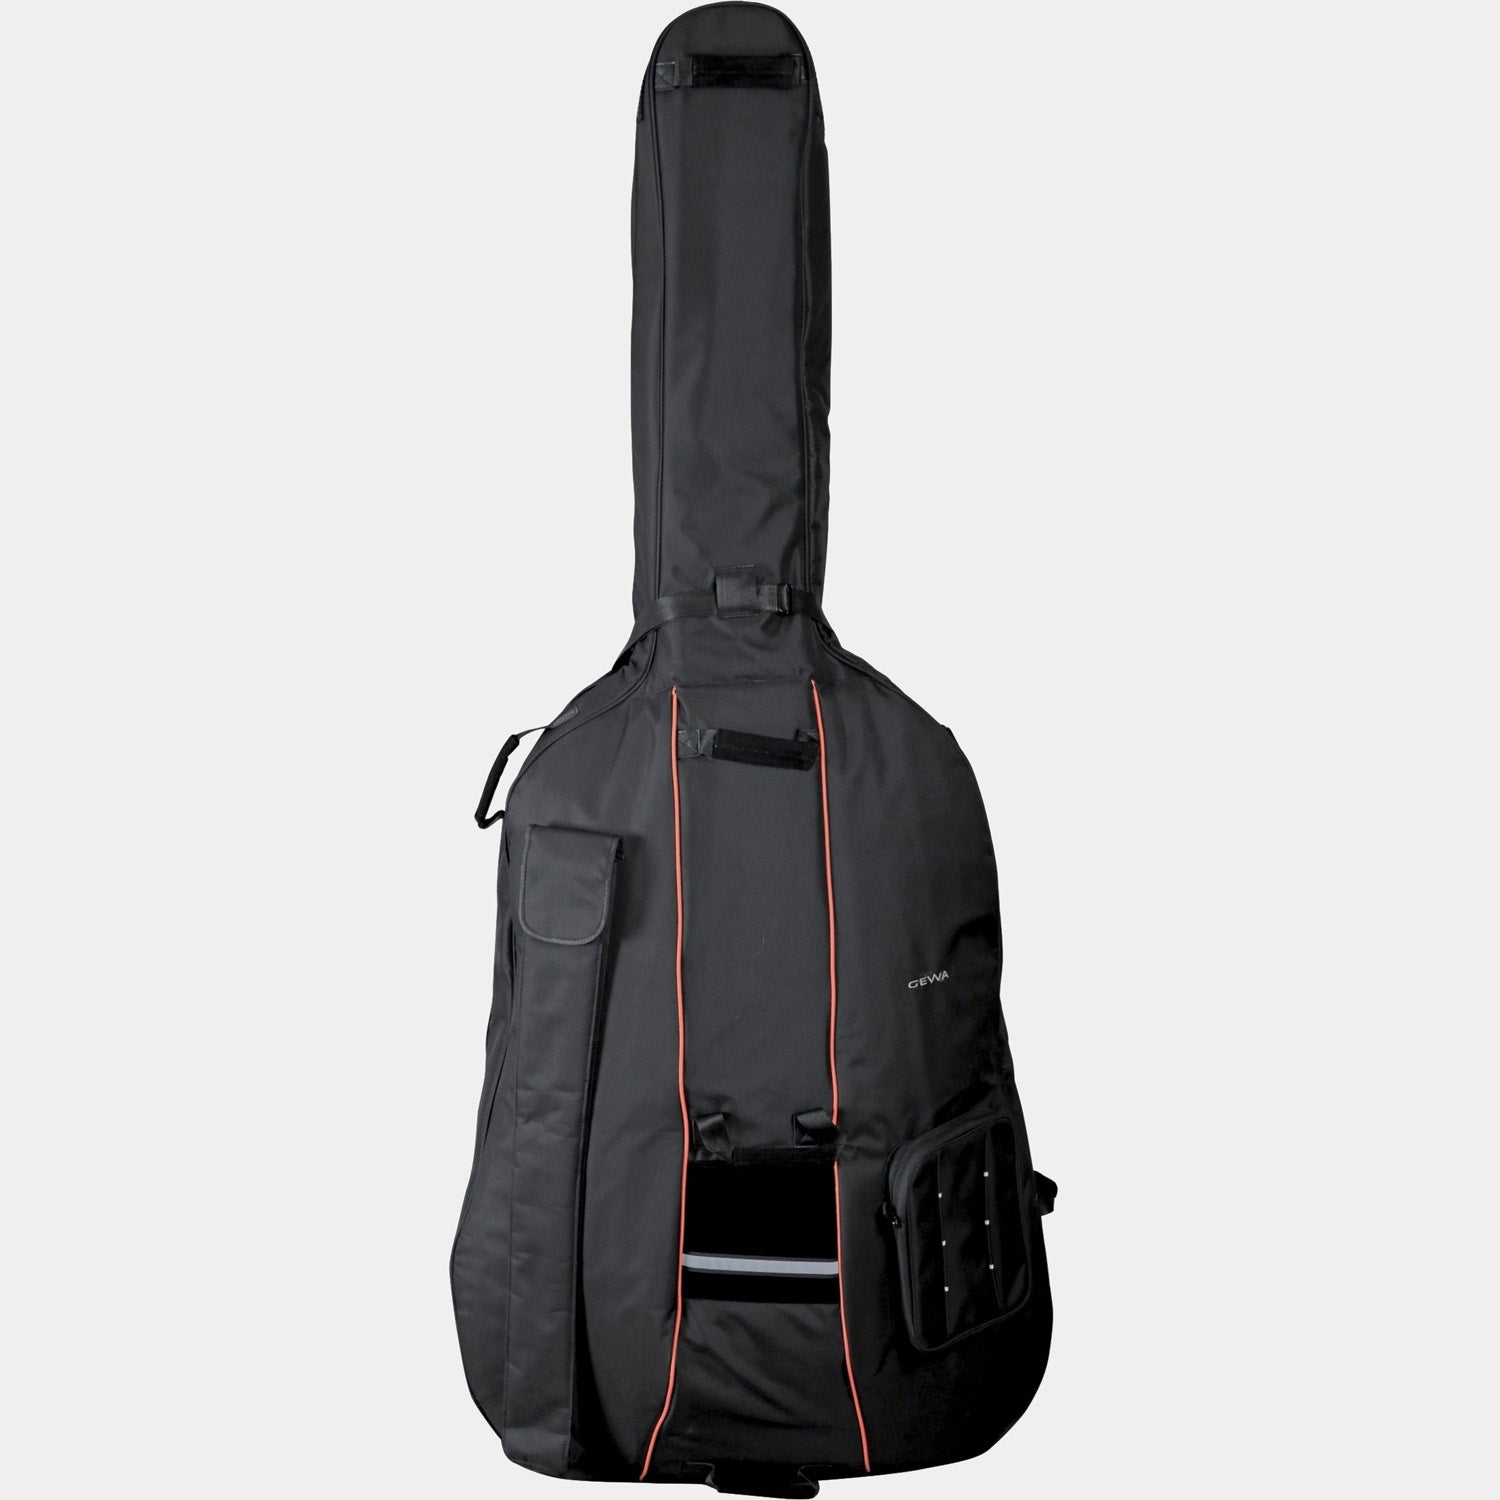 Double Bass Gig-Bag Premium